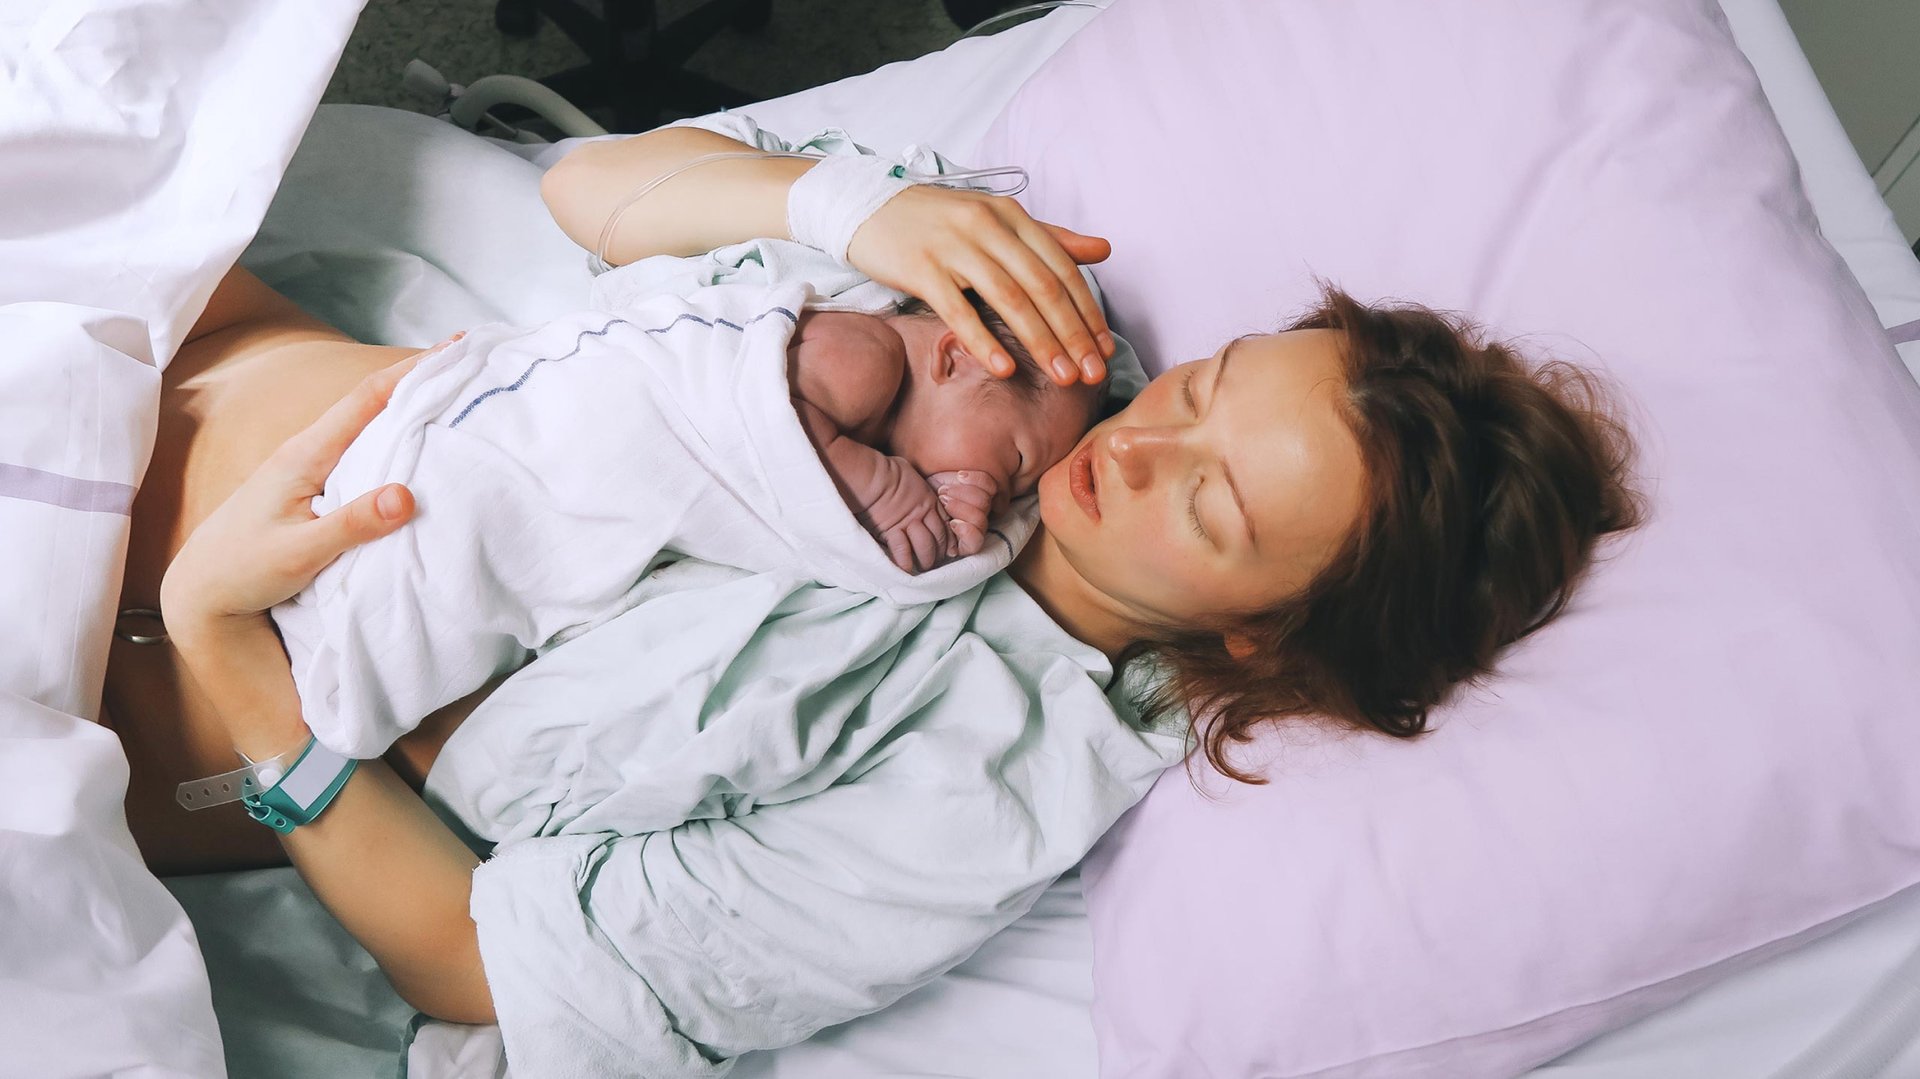 Mama lezy w lozku szpitalnym z dzieckiem po porodzie